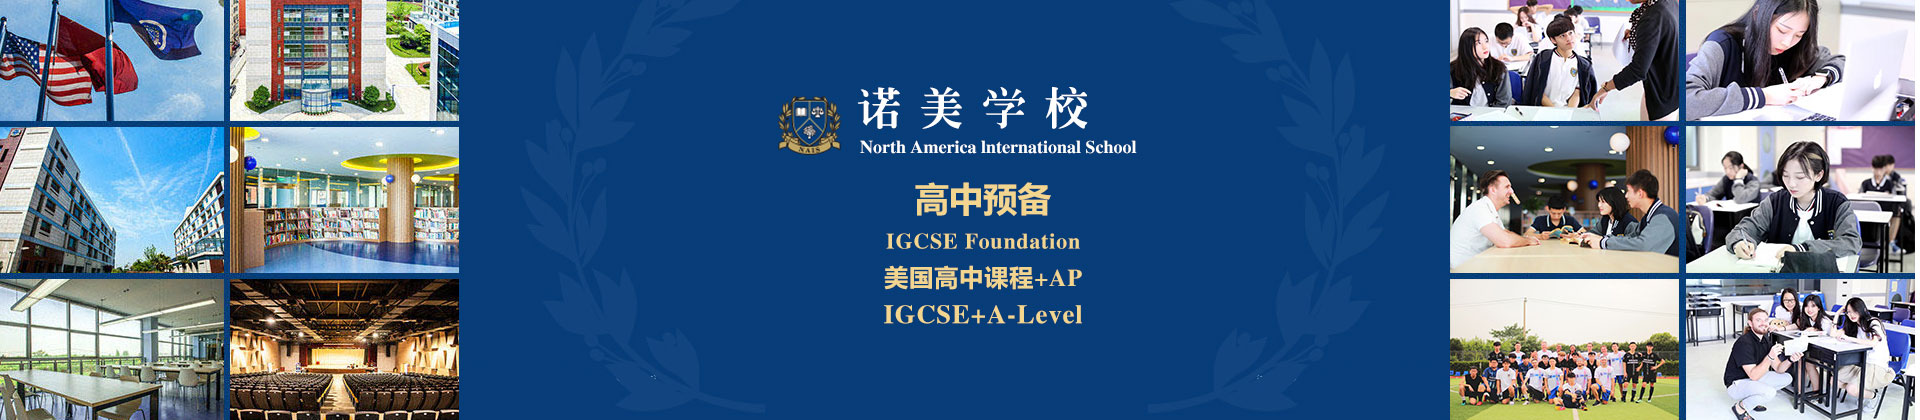 上海诺美国际学校